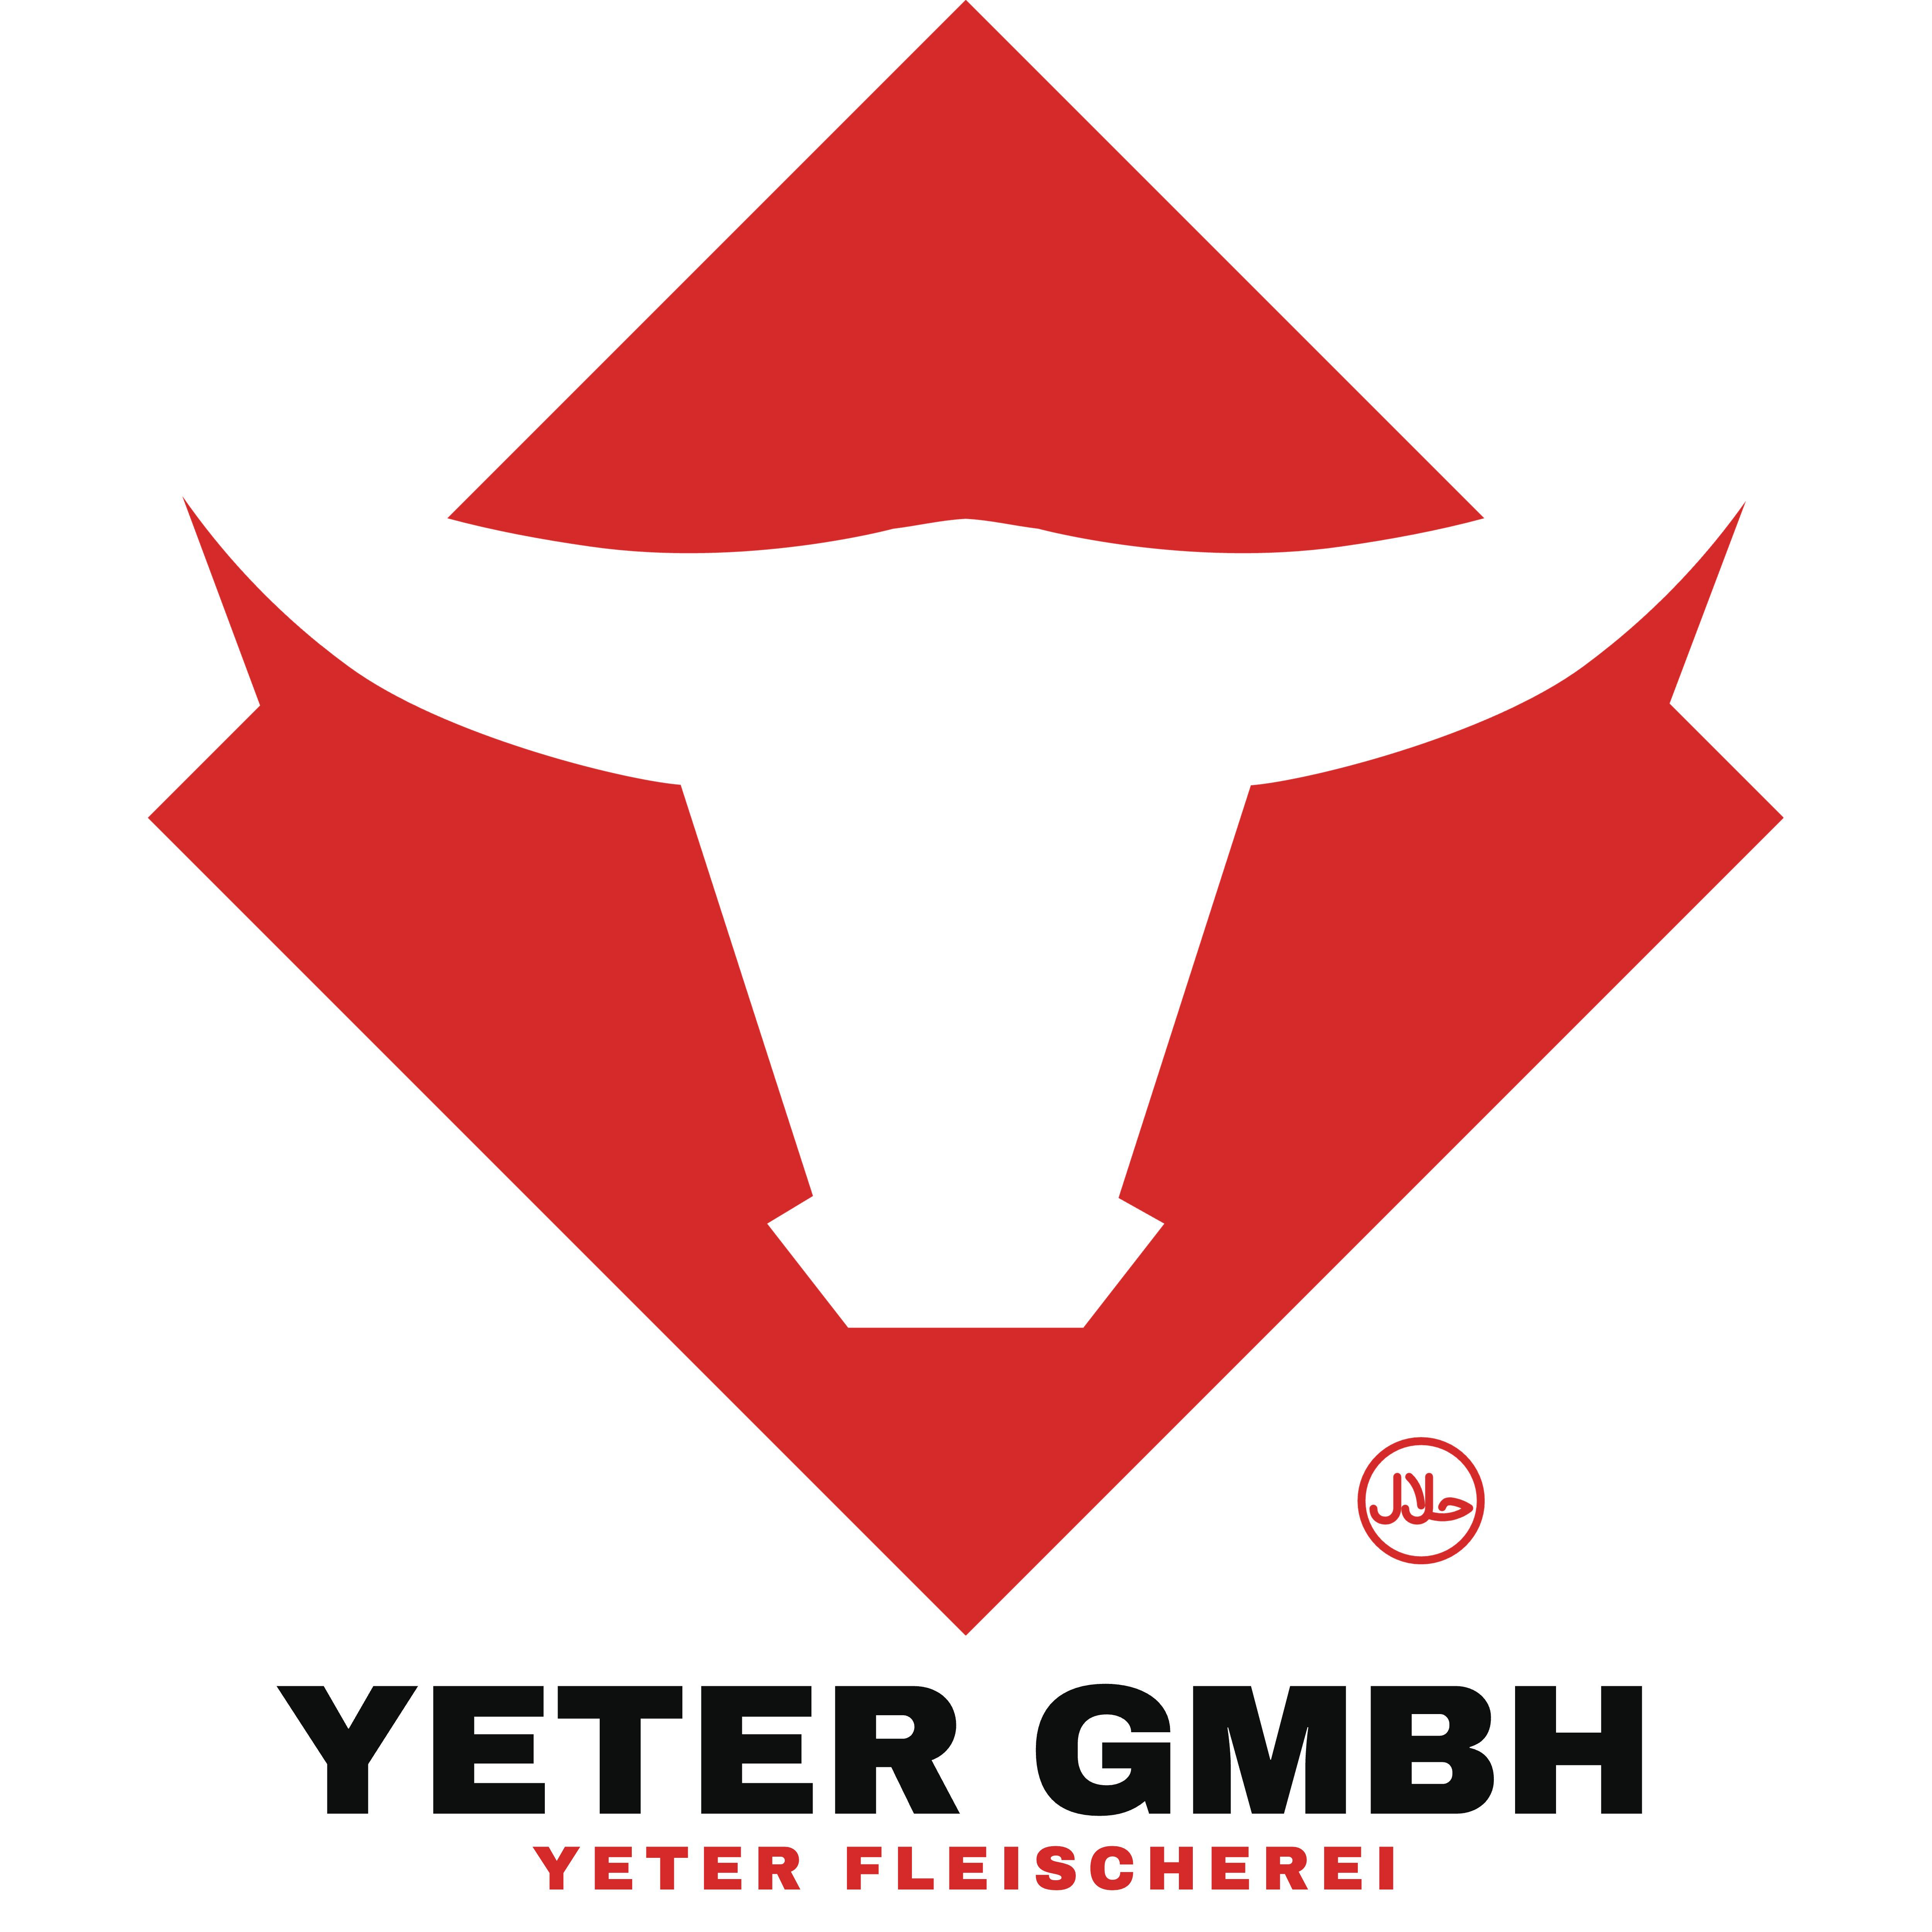 Fleischerei Yeter (Yeter GmbH)  